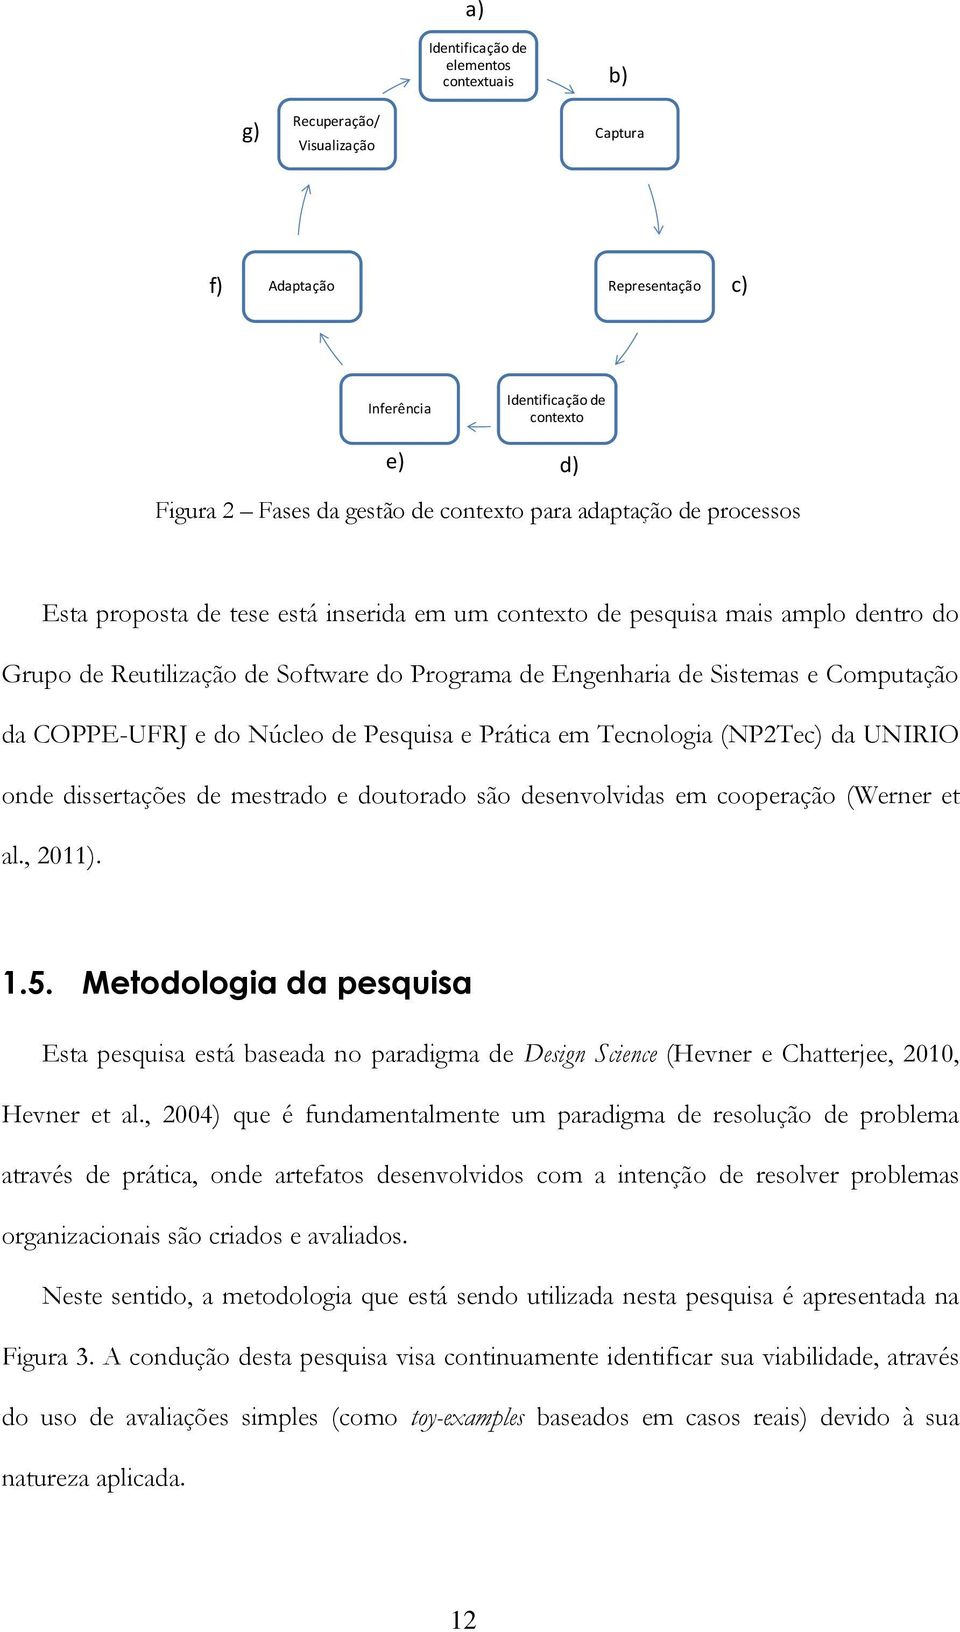 COPPE-UFRJ e do Núcleo de Pesquisa e Prática em Tecnologia (NP2Tec) da UNIRIO onde dissertações de mestrado e doutorado são desenvolvidas em cooperação (Werner et al., 2011). 1.5.